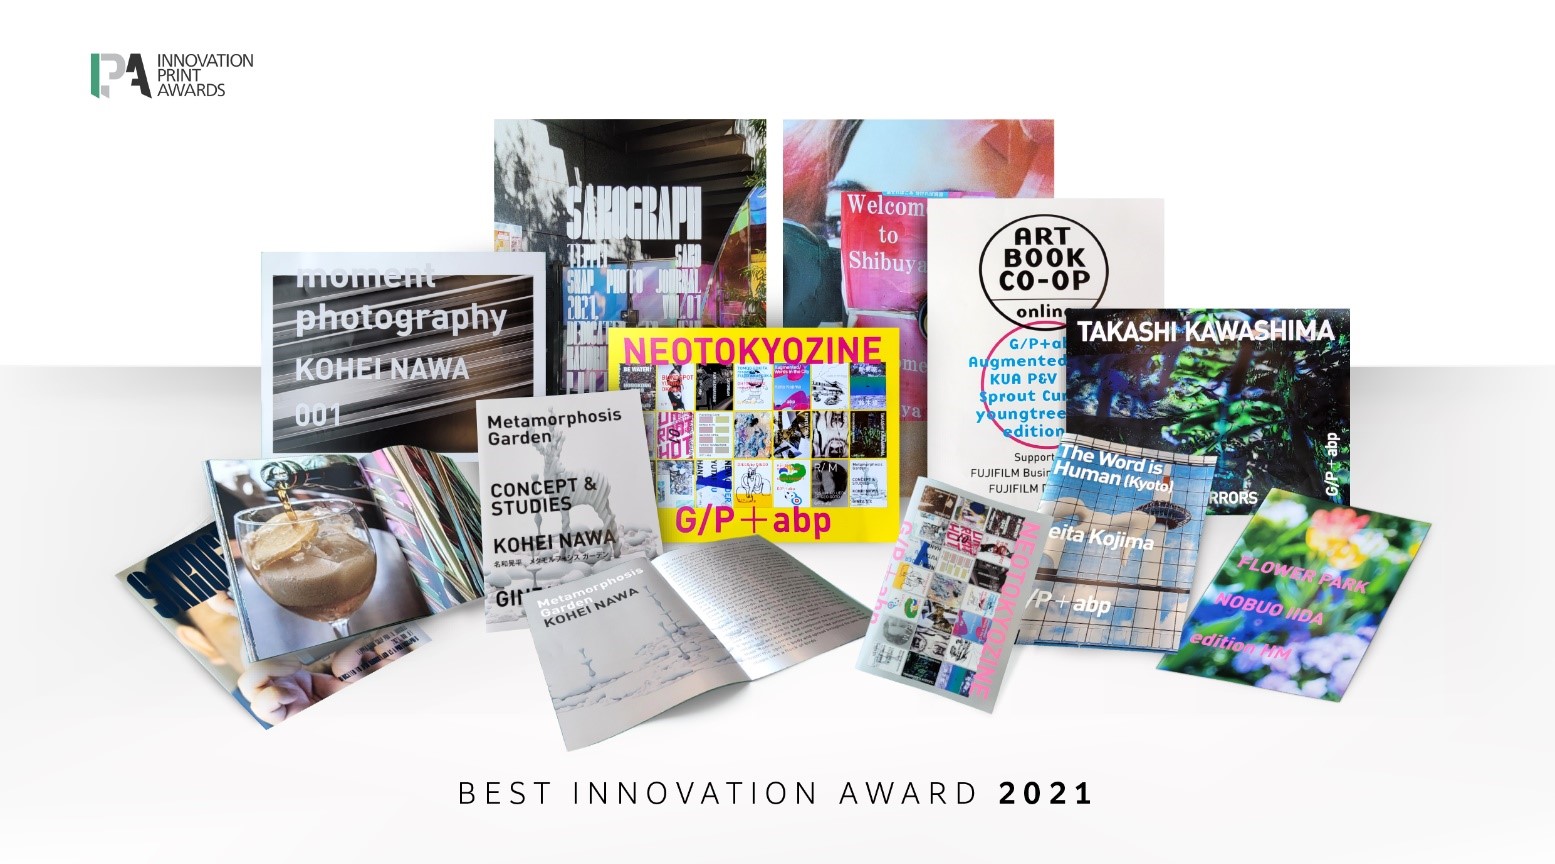 Innovation Print Awards 2021 – Best Innovation Award Winner